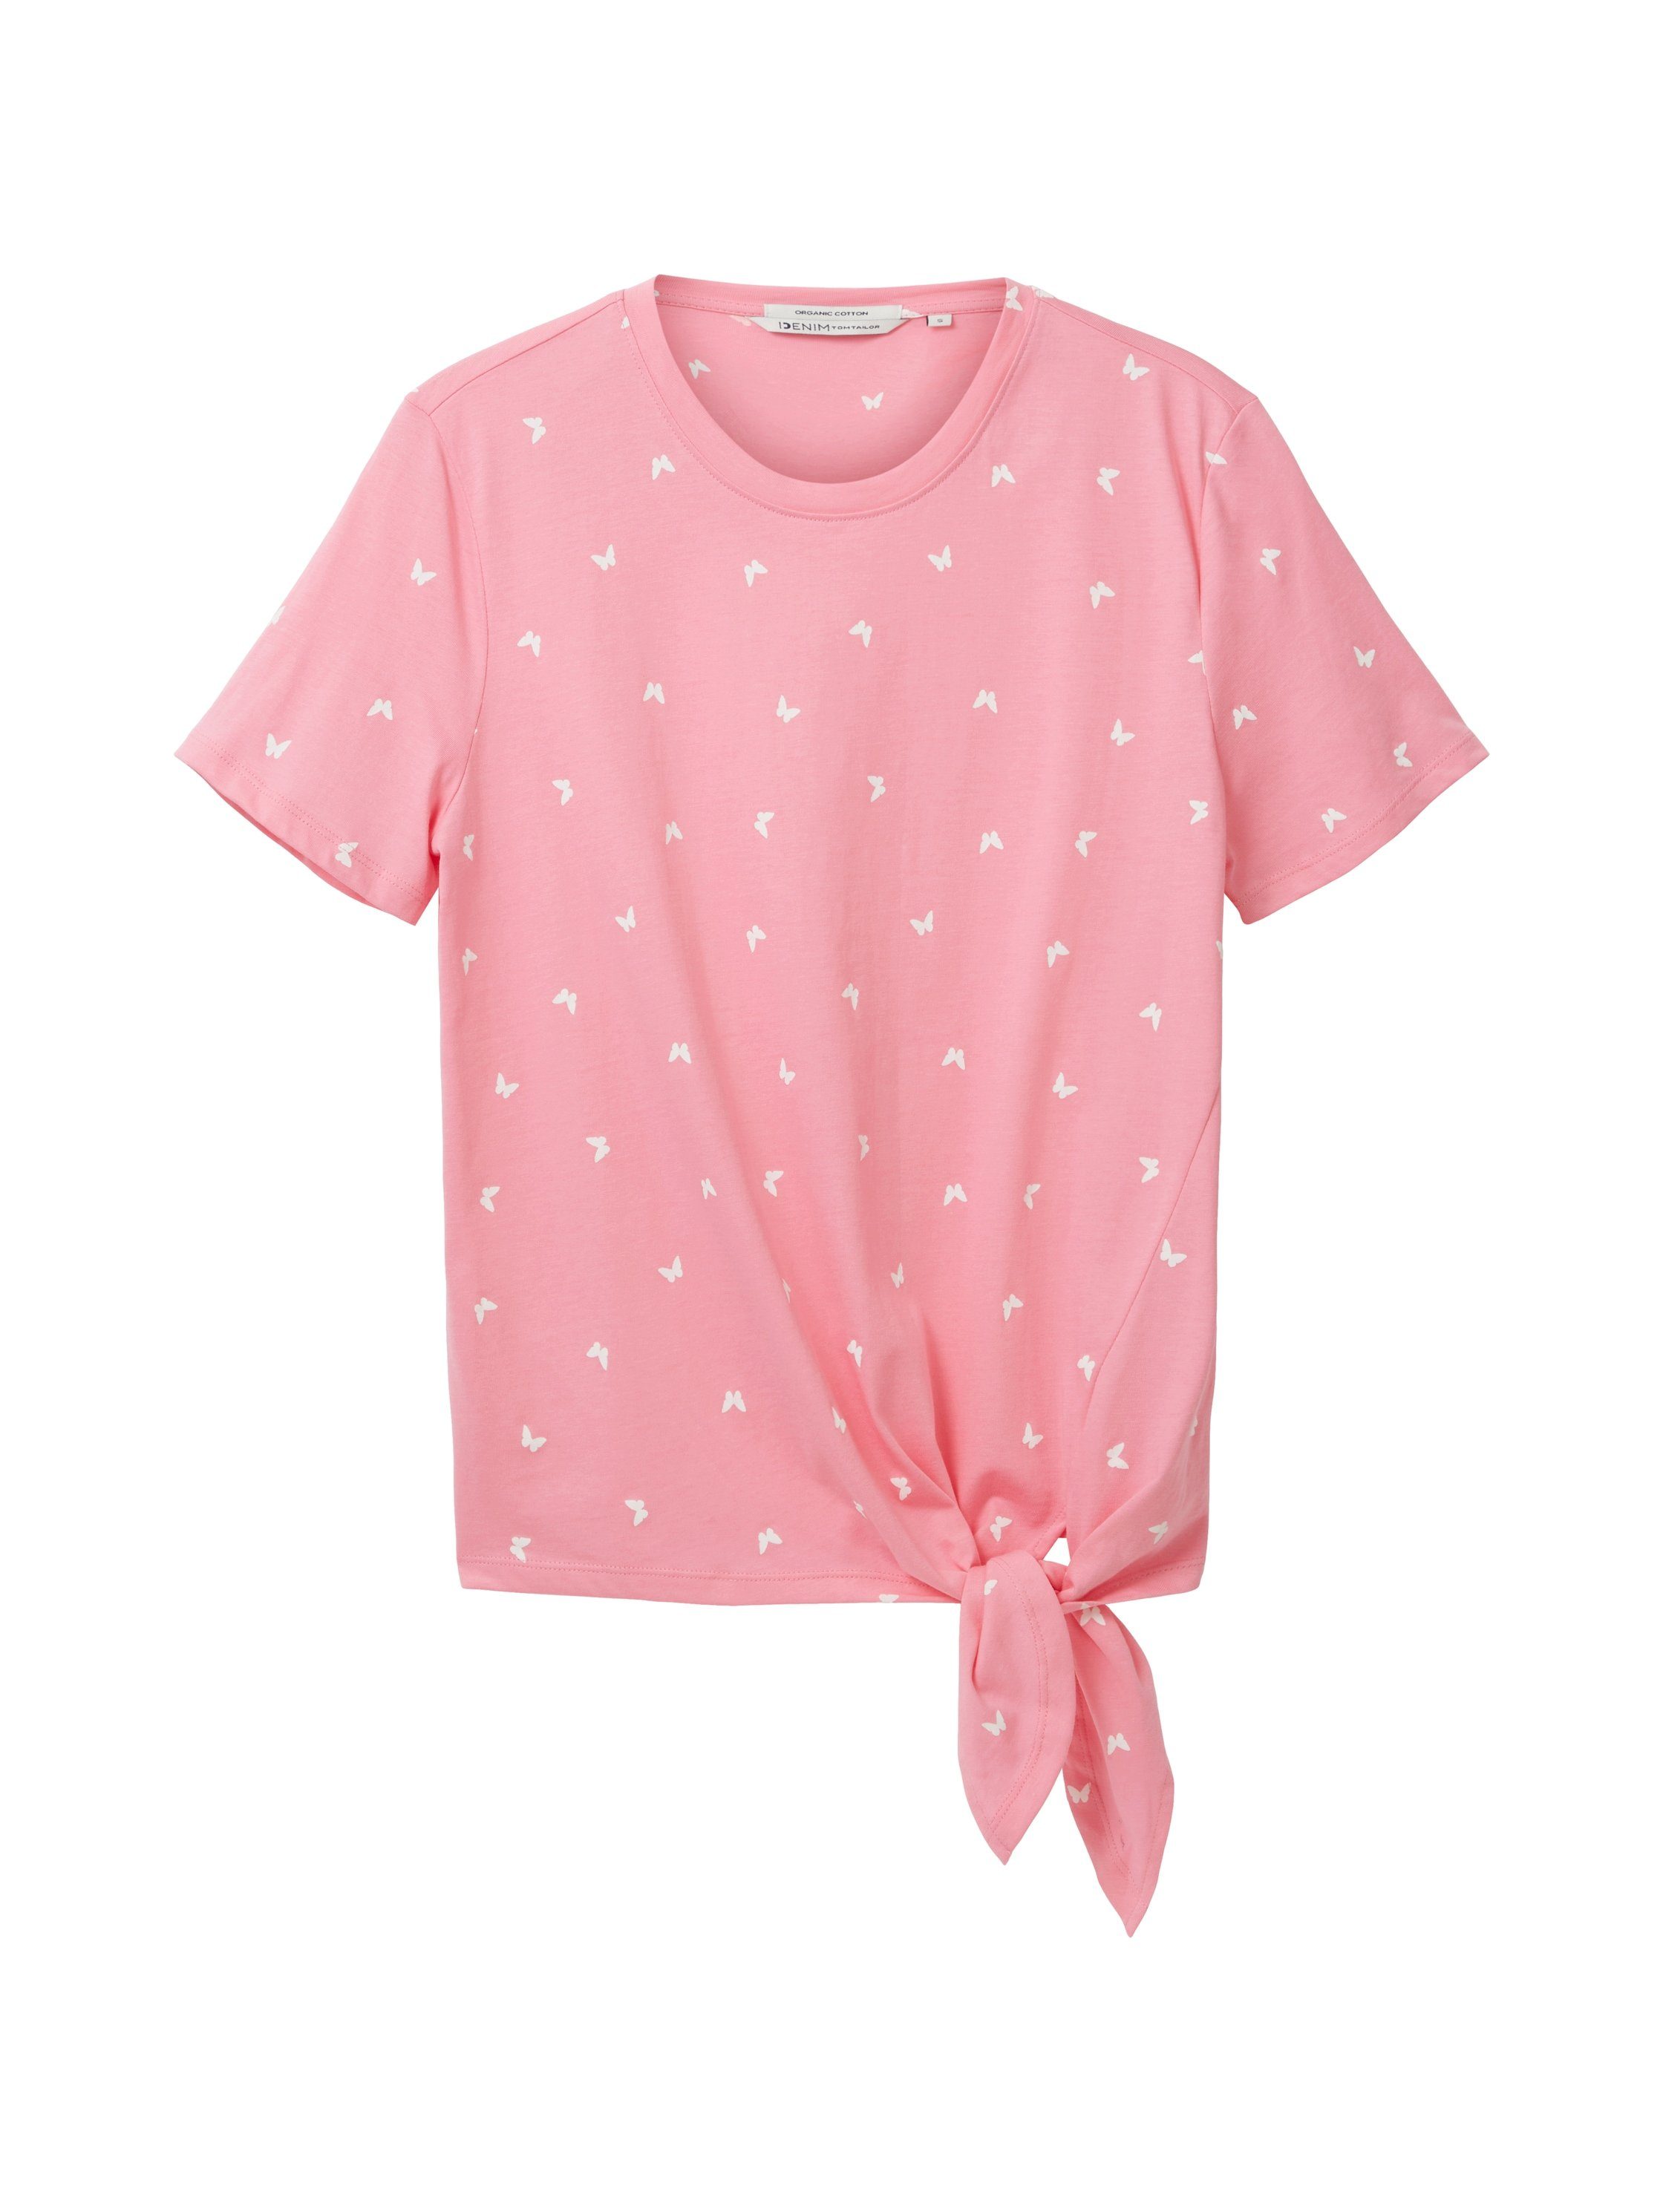 TOM TAILOR Denim T-Shirt Schlaufen einen Bund am Knoten pink für vorhanden gemustert